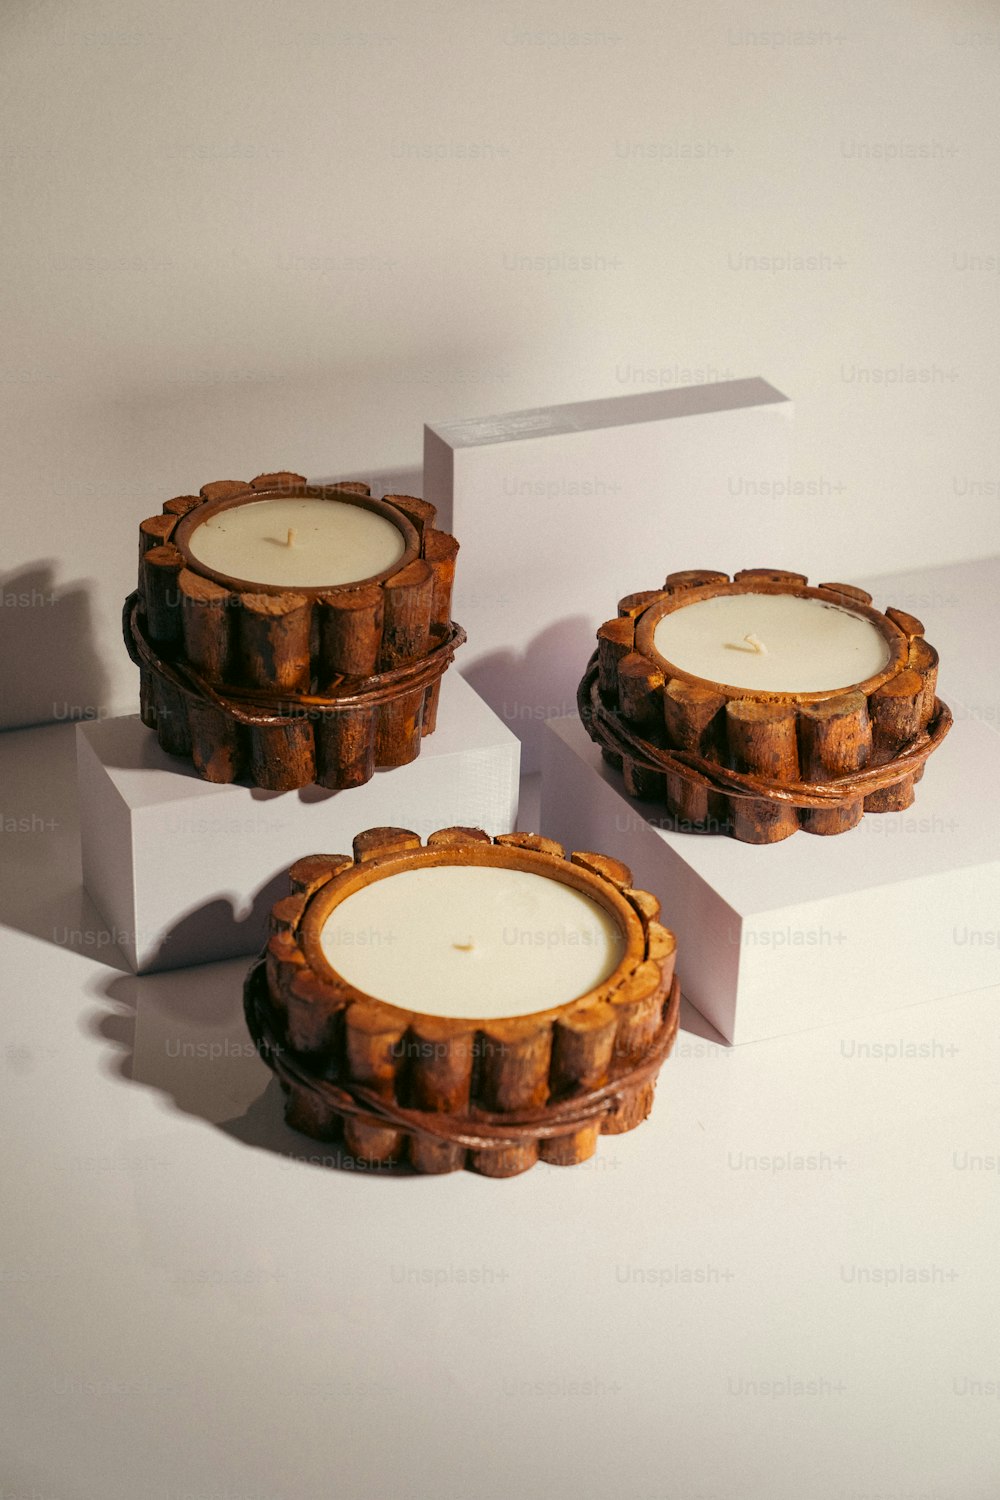 Drei Kerzen sitzen auf einem weißen Kasten